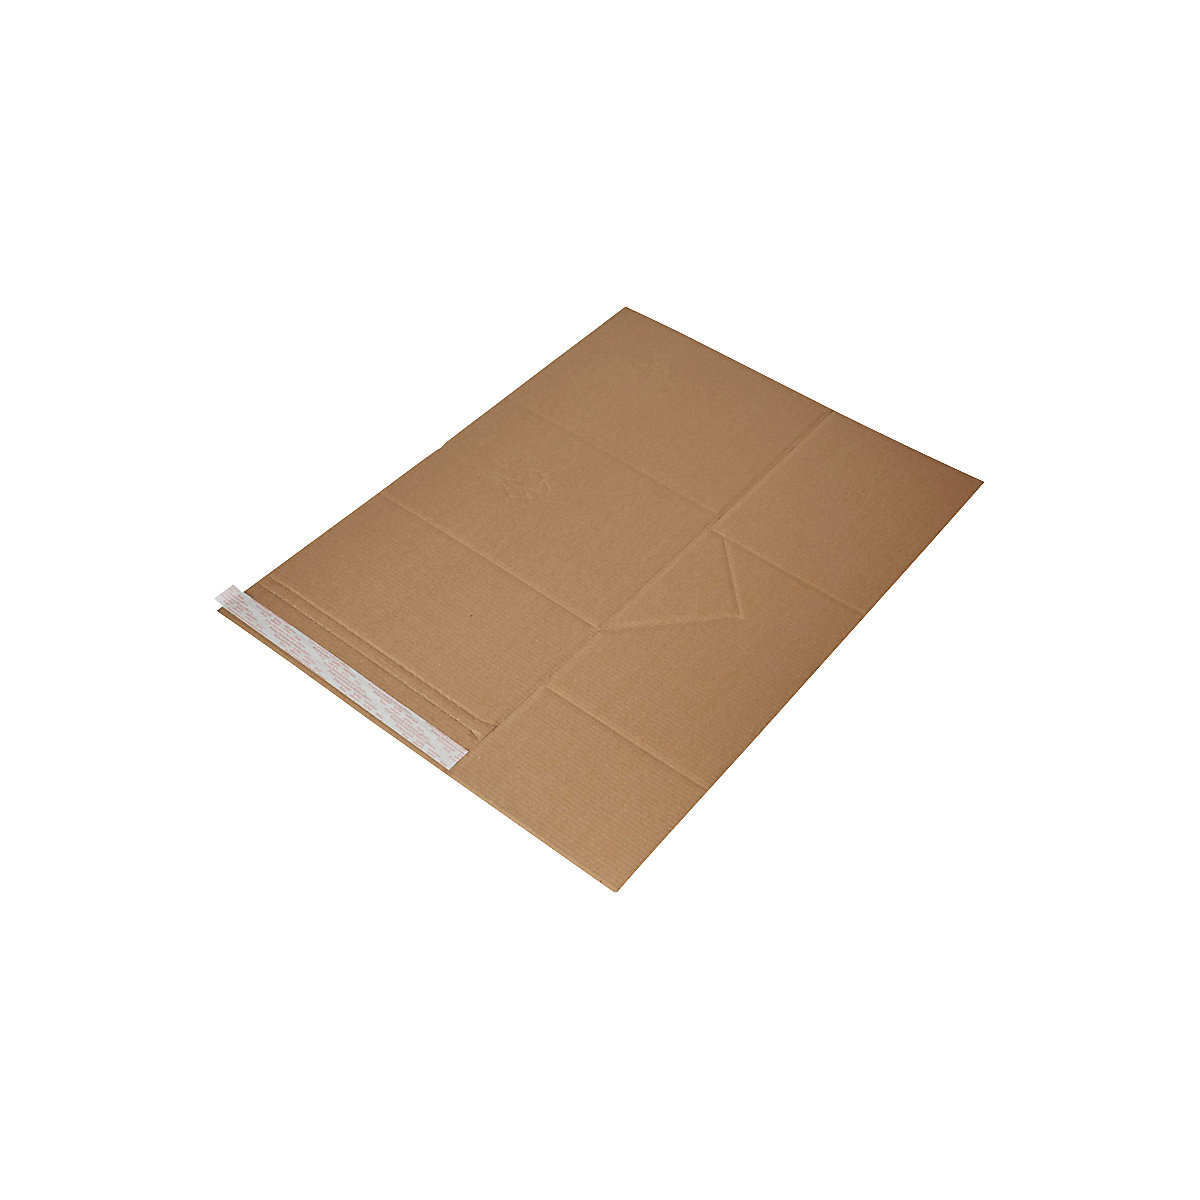 Imballaggio universale Drehfix – flow, con chiusura autoadesiva, lungh. x largh. 305 x 230 mm, a partire da 30 pz.-3